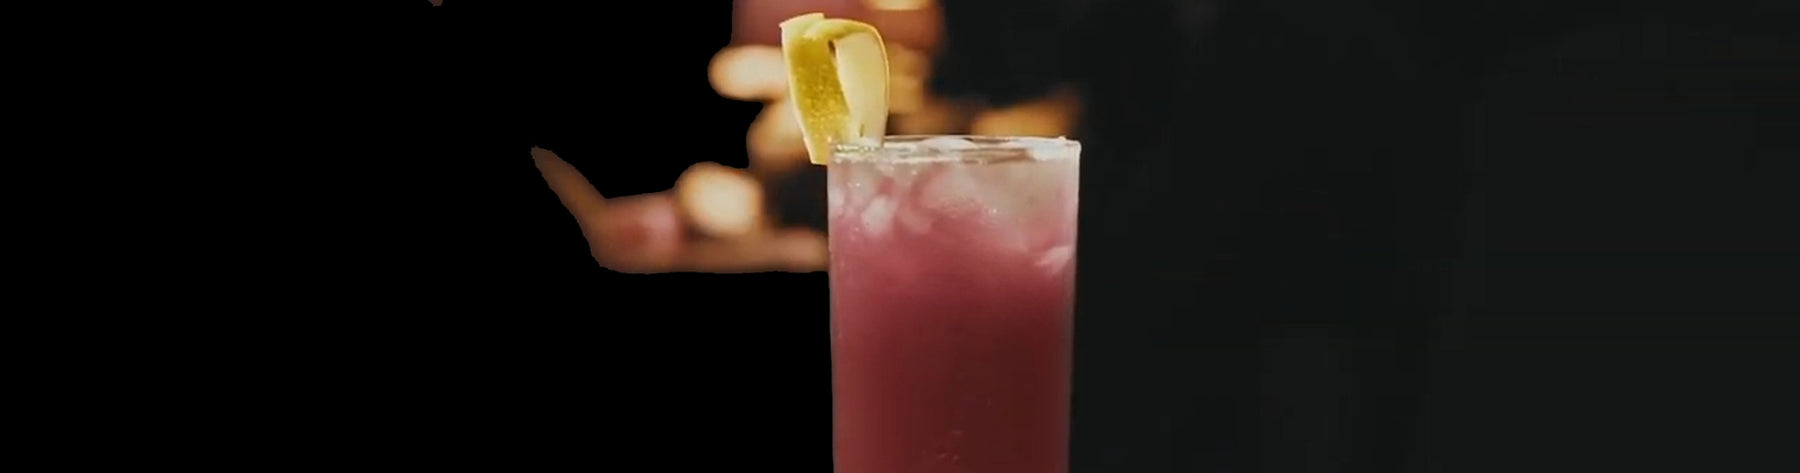 Port Lemonade Cocktail With Fonseca Bin 27